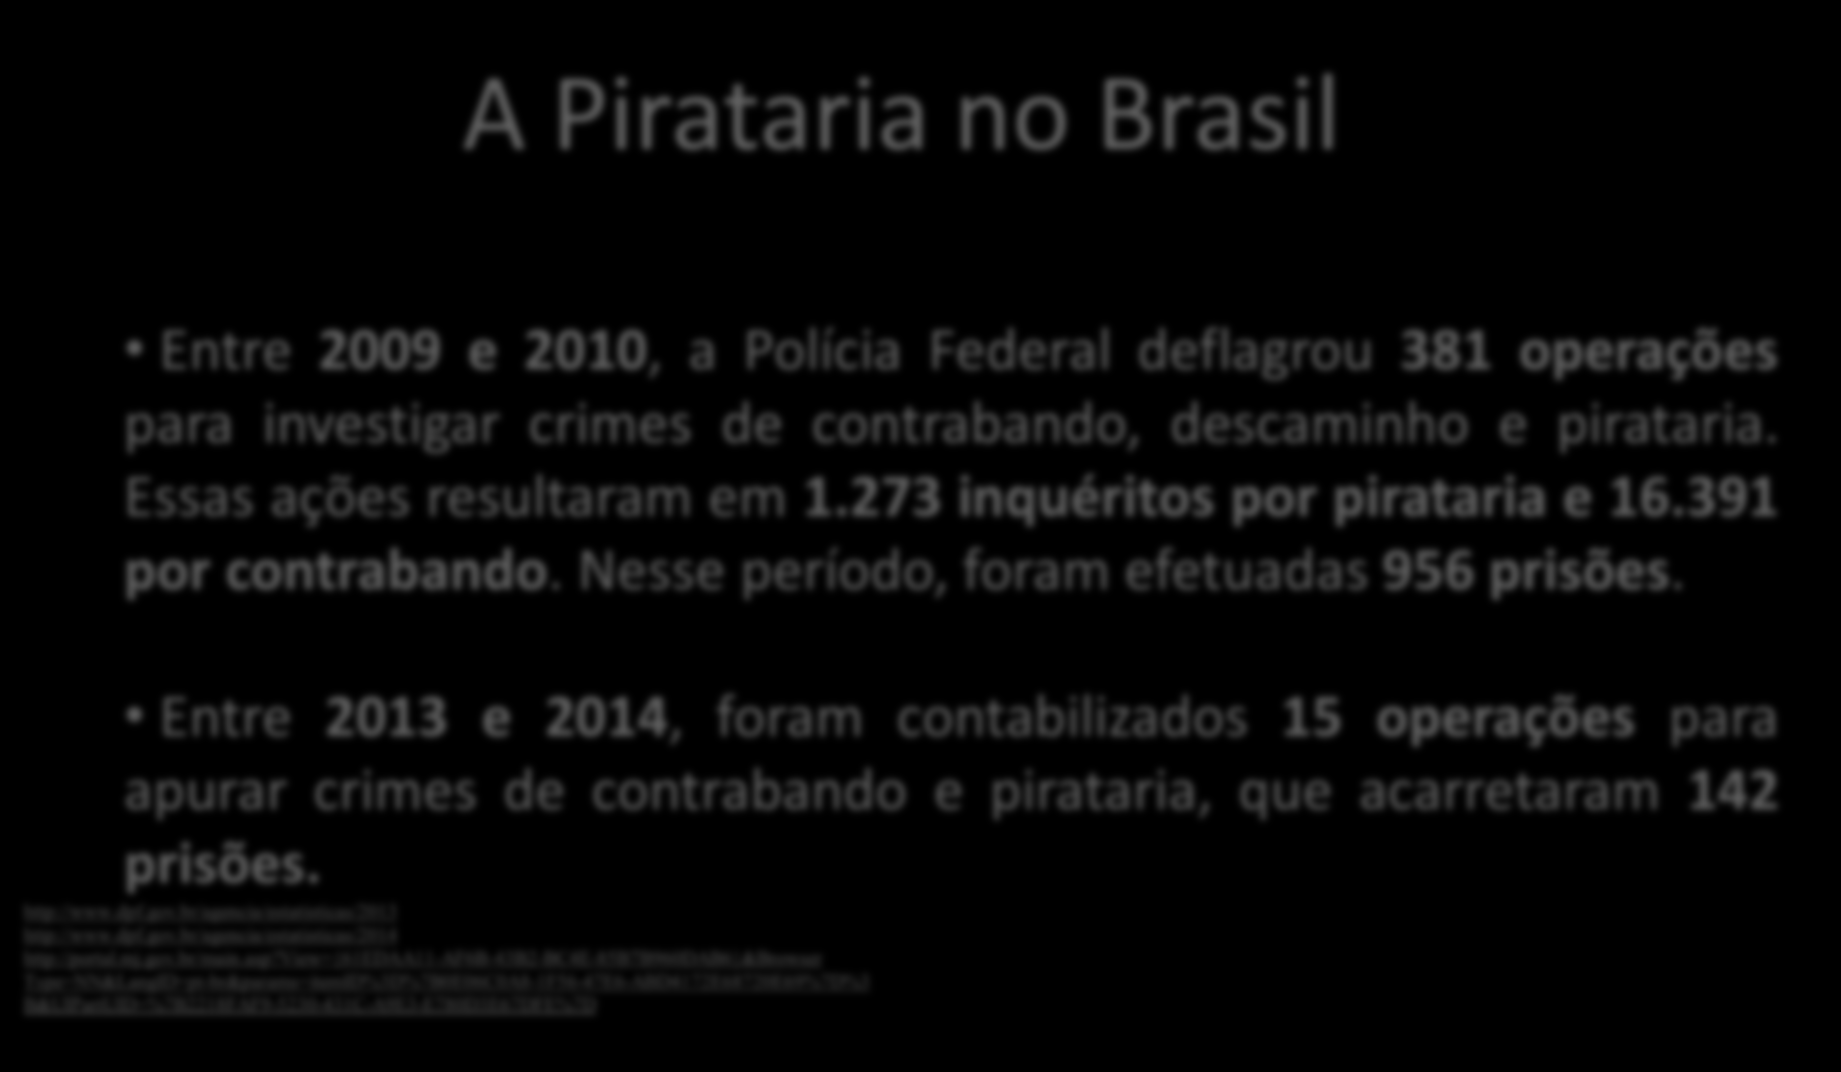 A Pirataria no Brasil Entre 2009 e 2010, a Polícia Federal deflagrou 381 operações para investigar crimes de contrabando, descaminho e pirataria. Essas ações resultaram em 1.